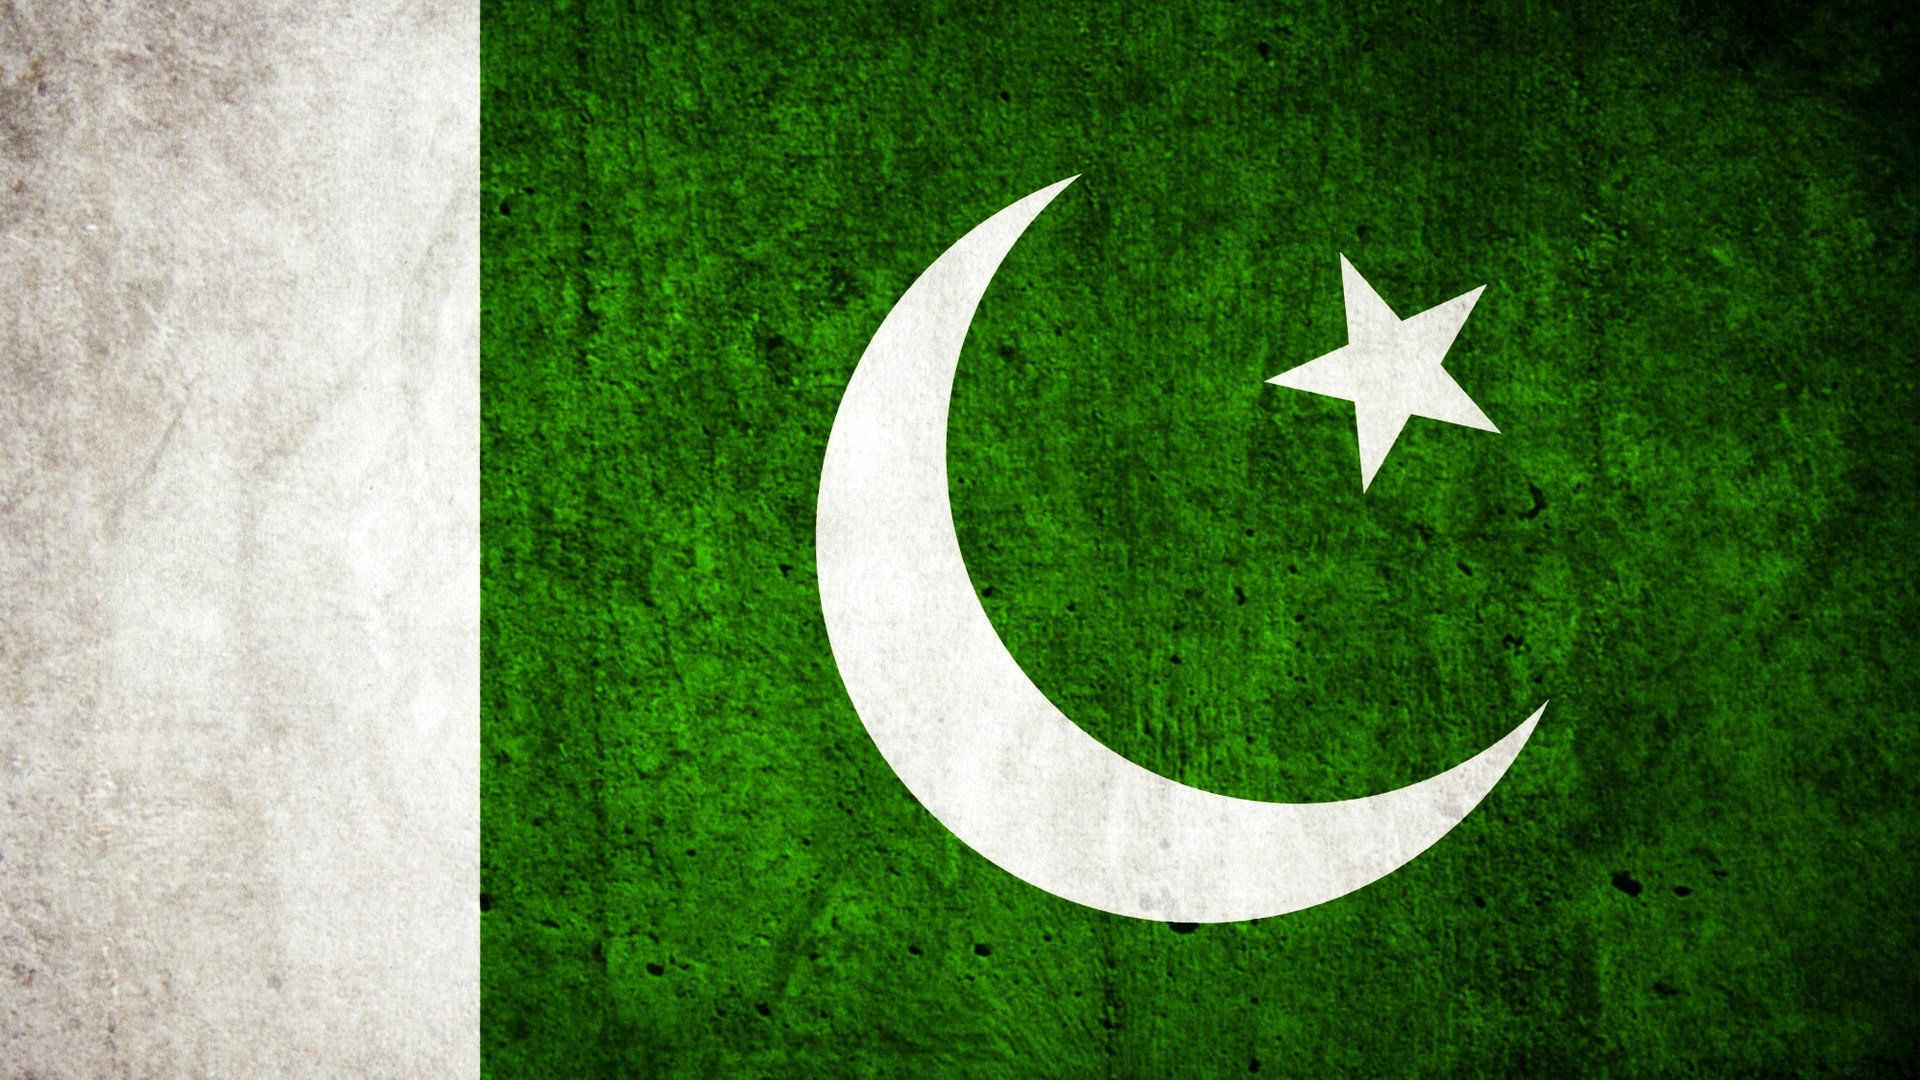 pakistan flag wallpaper,verde,creciente,fuente,bandera,césped